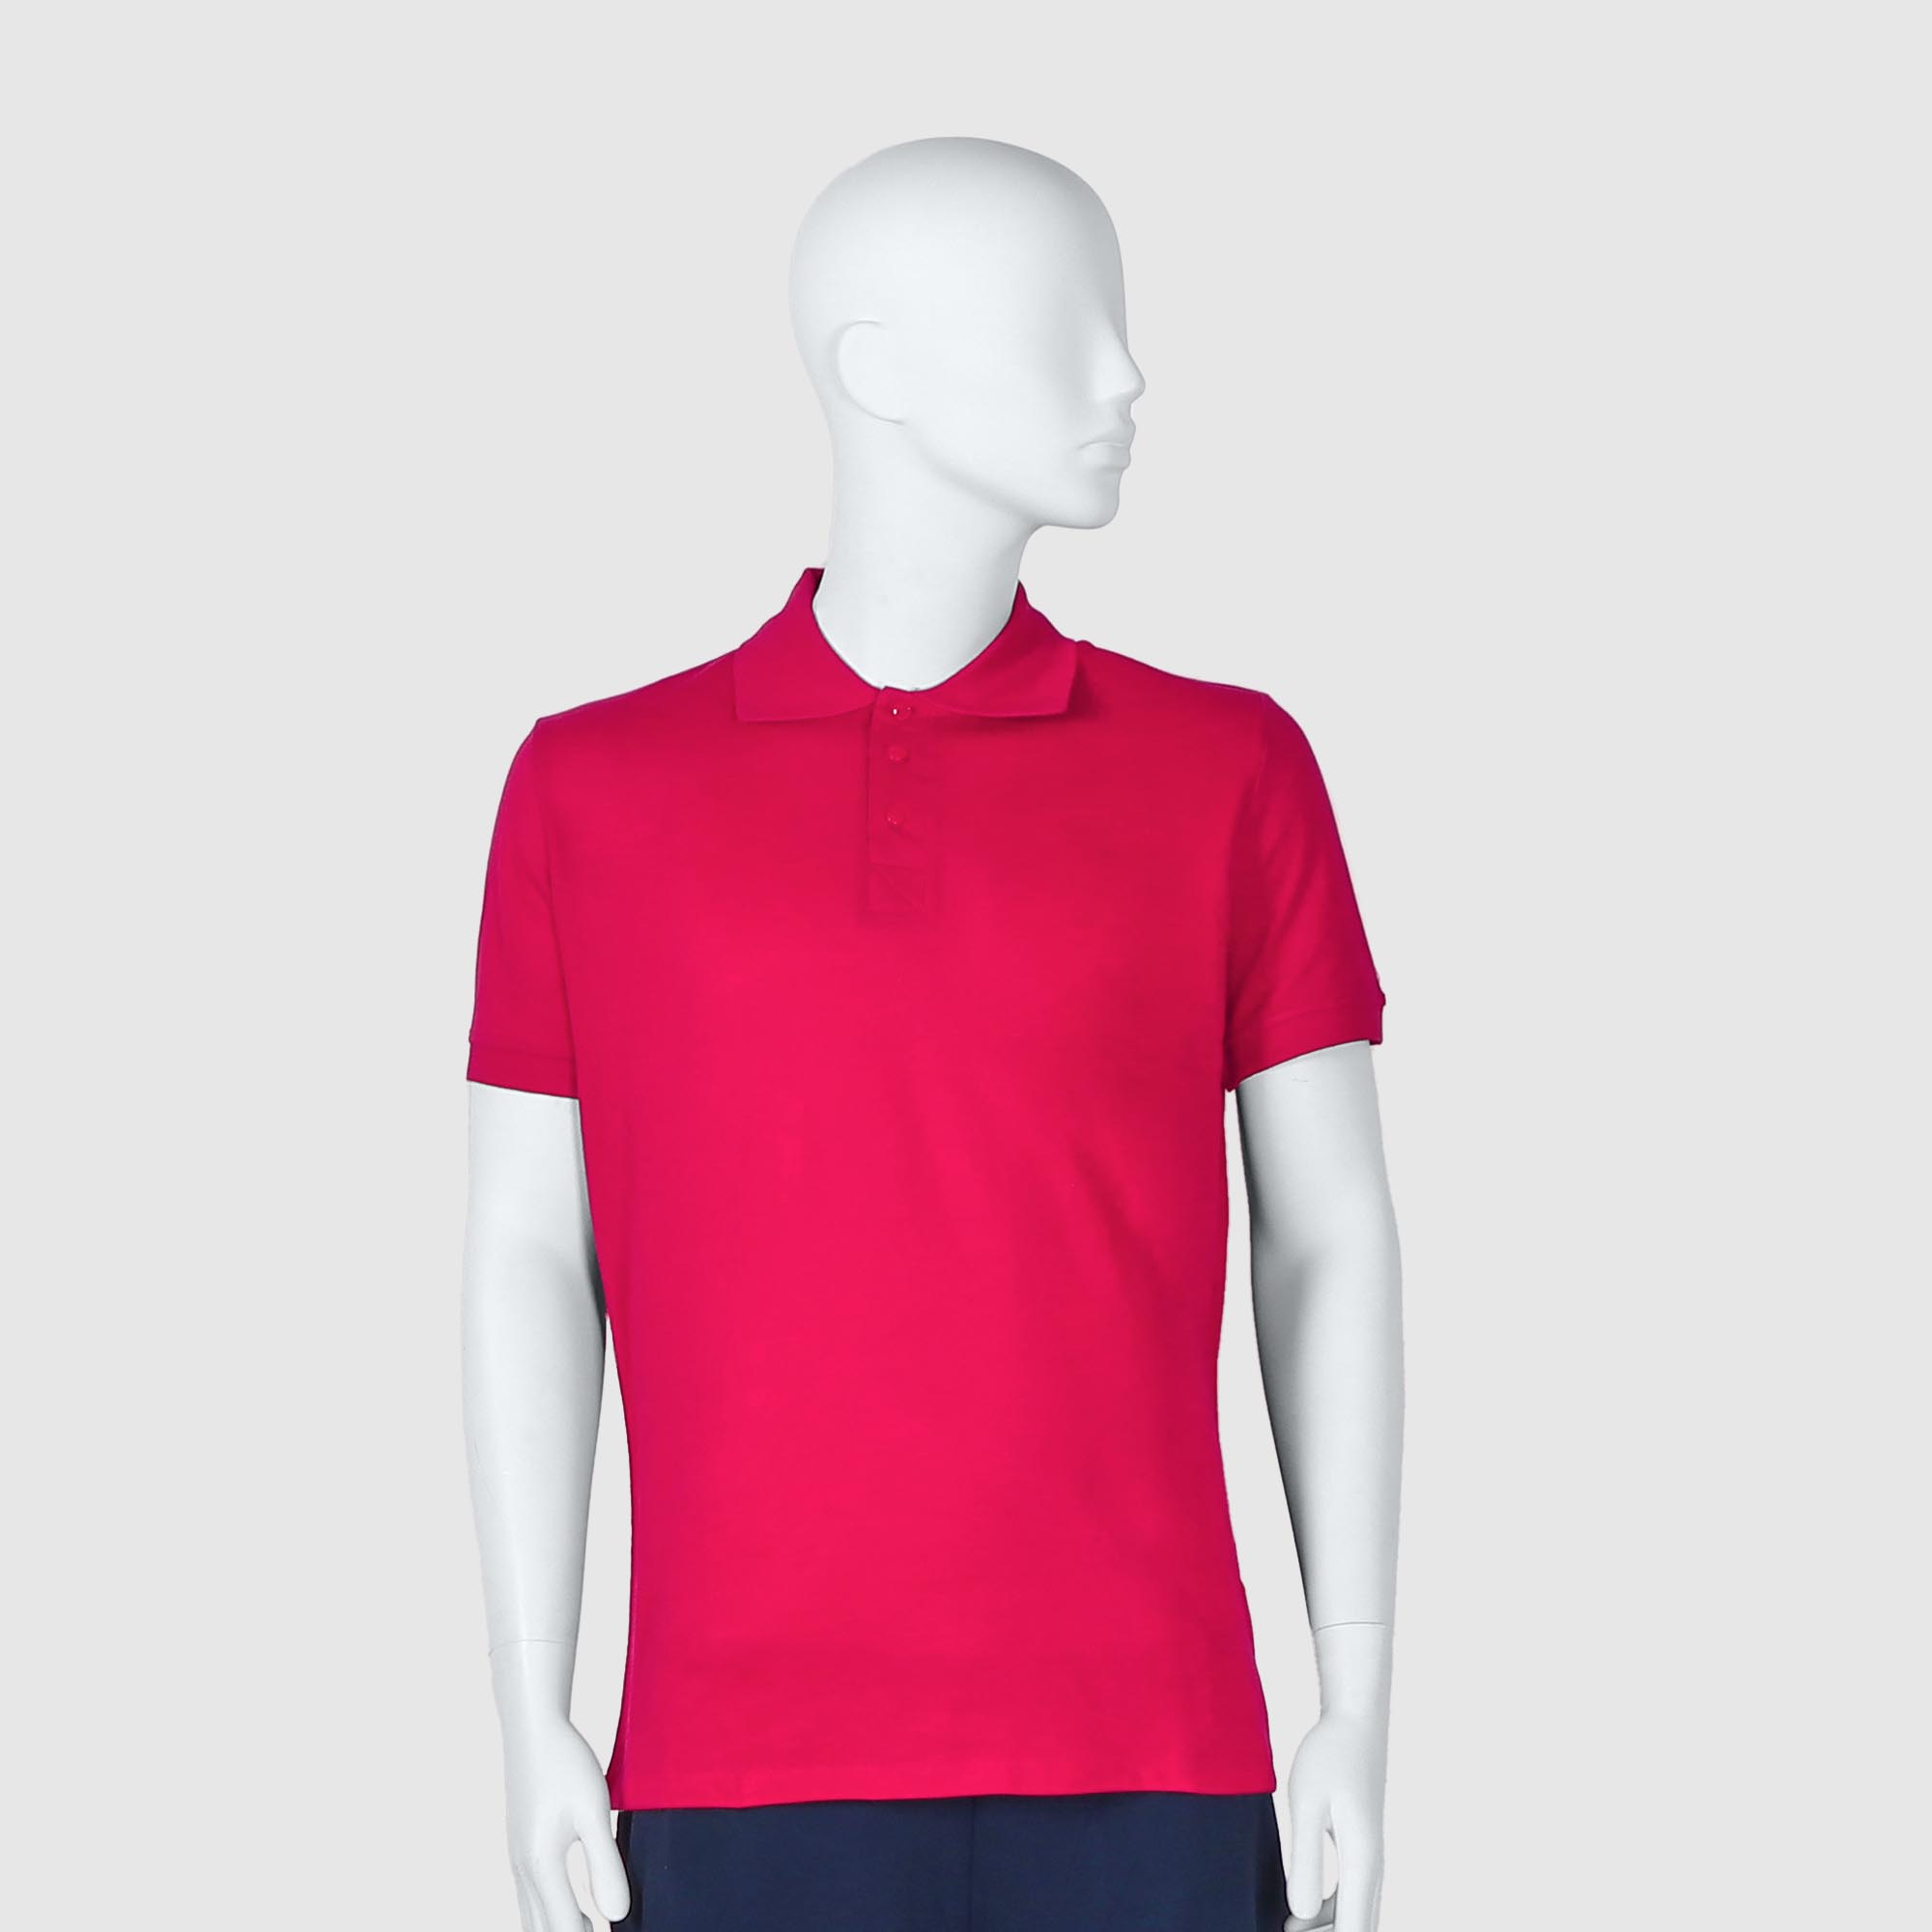 Мужская футболка-поло Diva Teks красная (DTD-08), цвет красный, размер 54-56 - фото 1